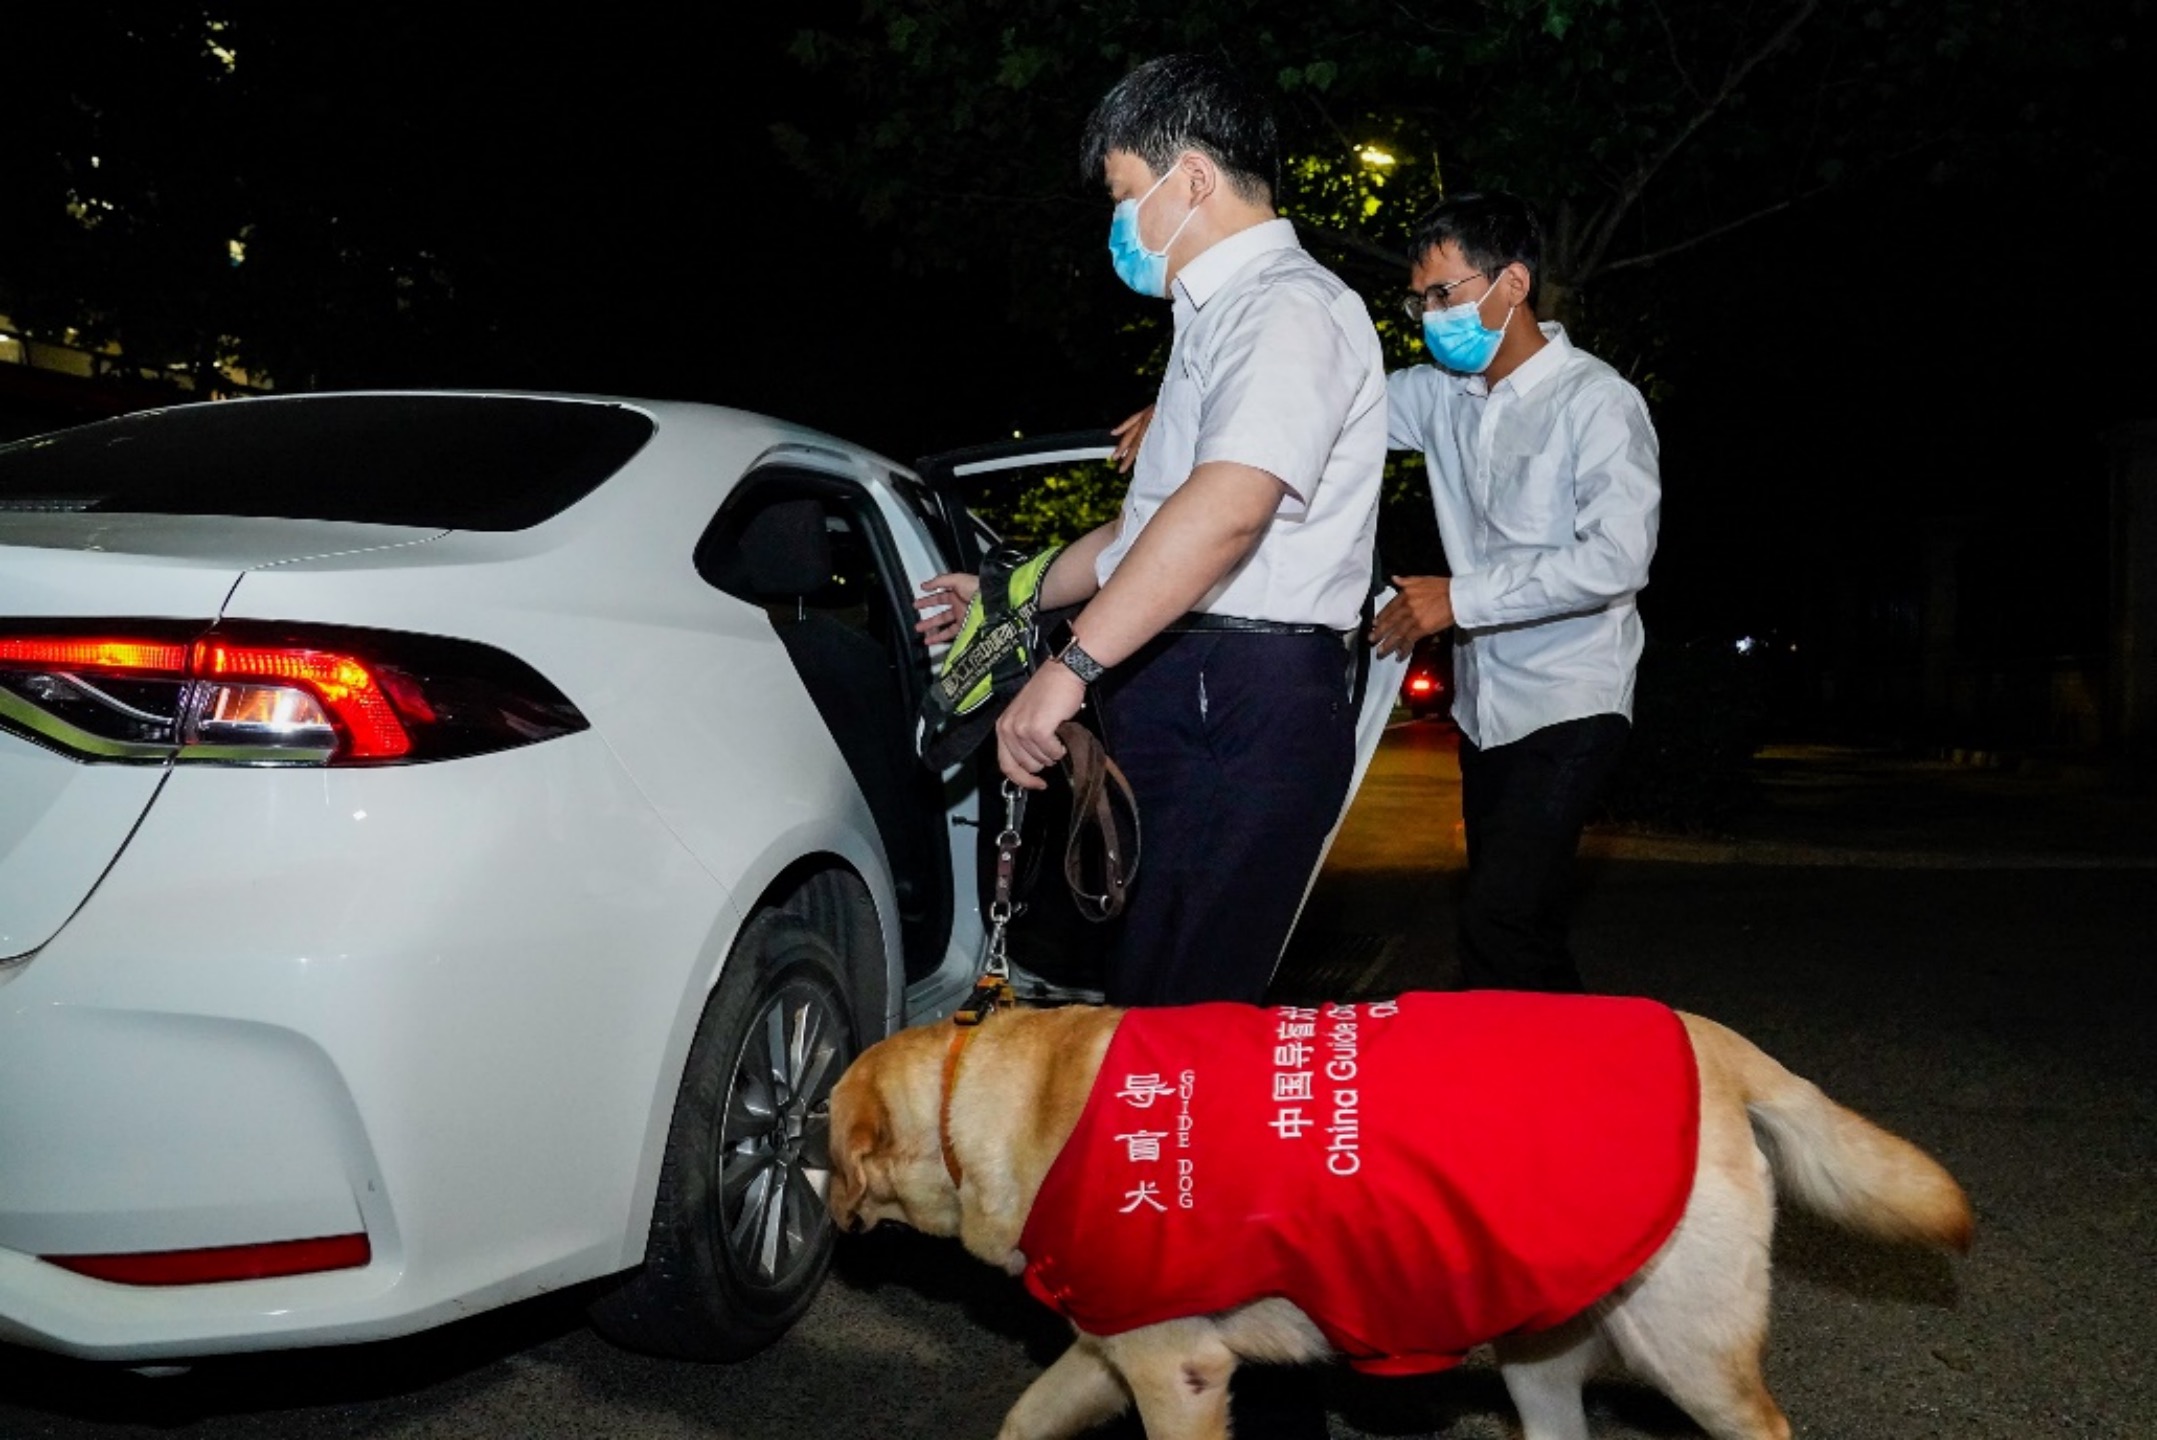 滴滴宣布与中国盲协签订战略协议 盲人用户可携带导盲犬乘车